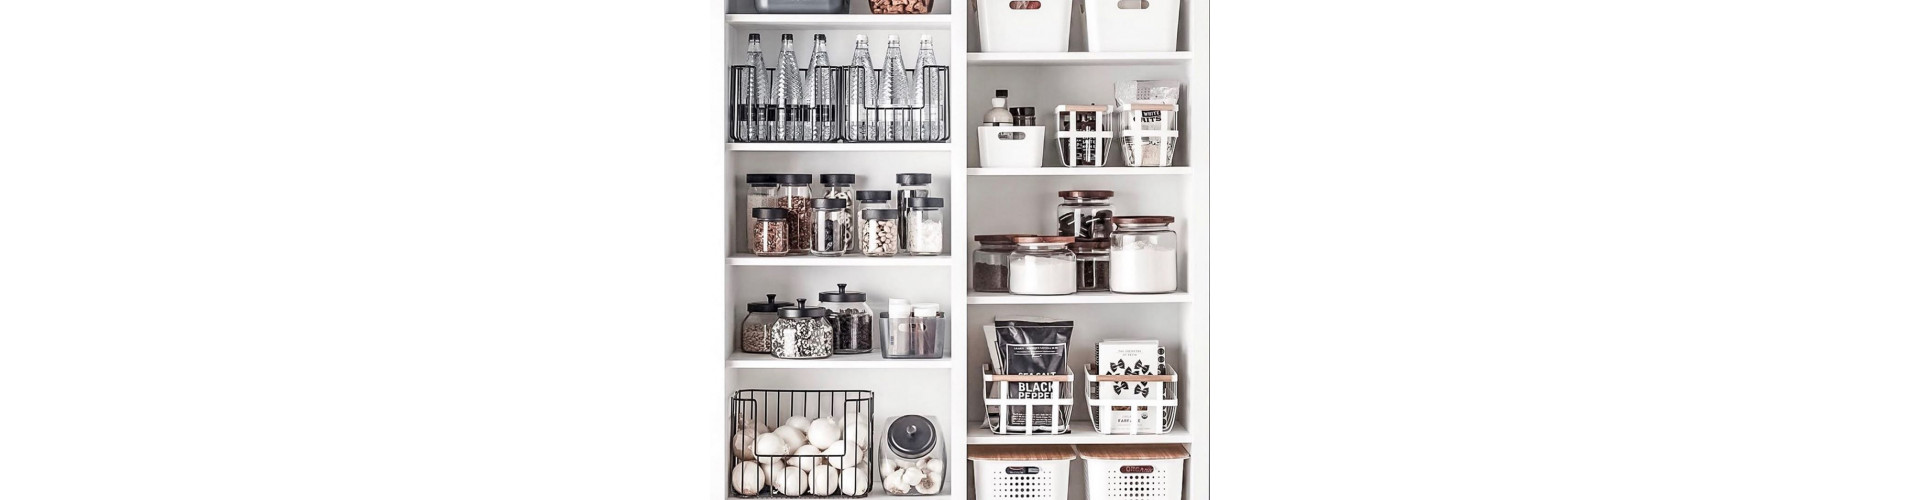 Идеи для организации хранения в кухонных шкафах: умные системы и аксессуары